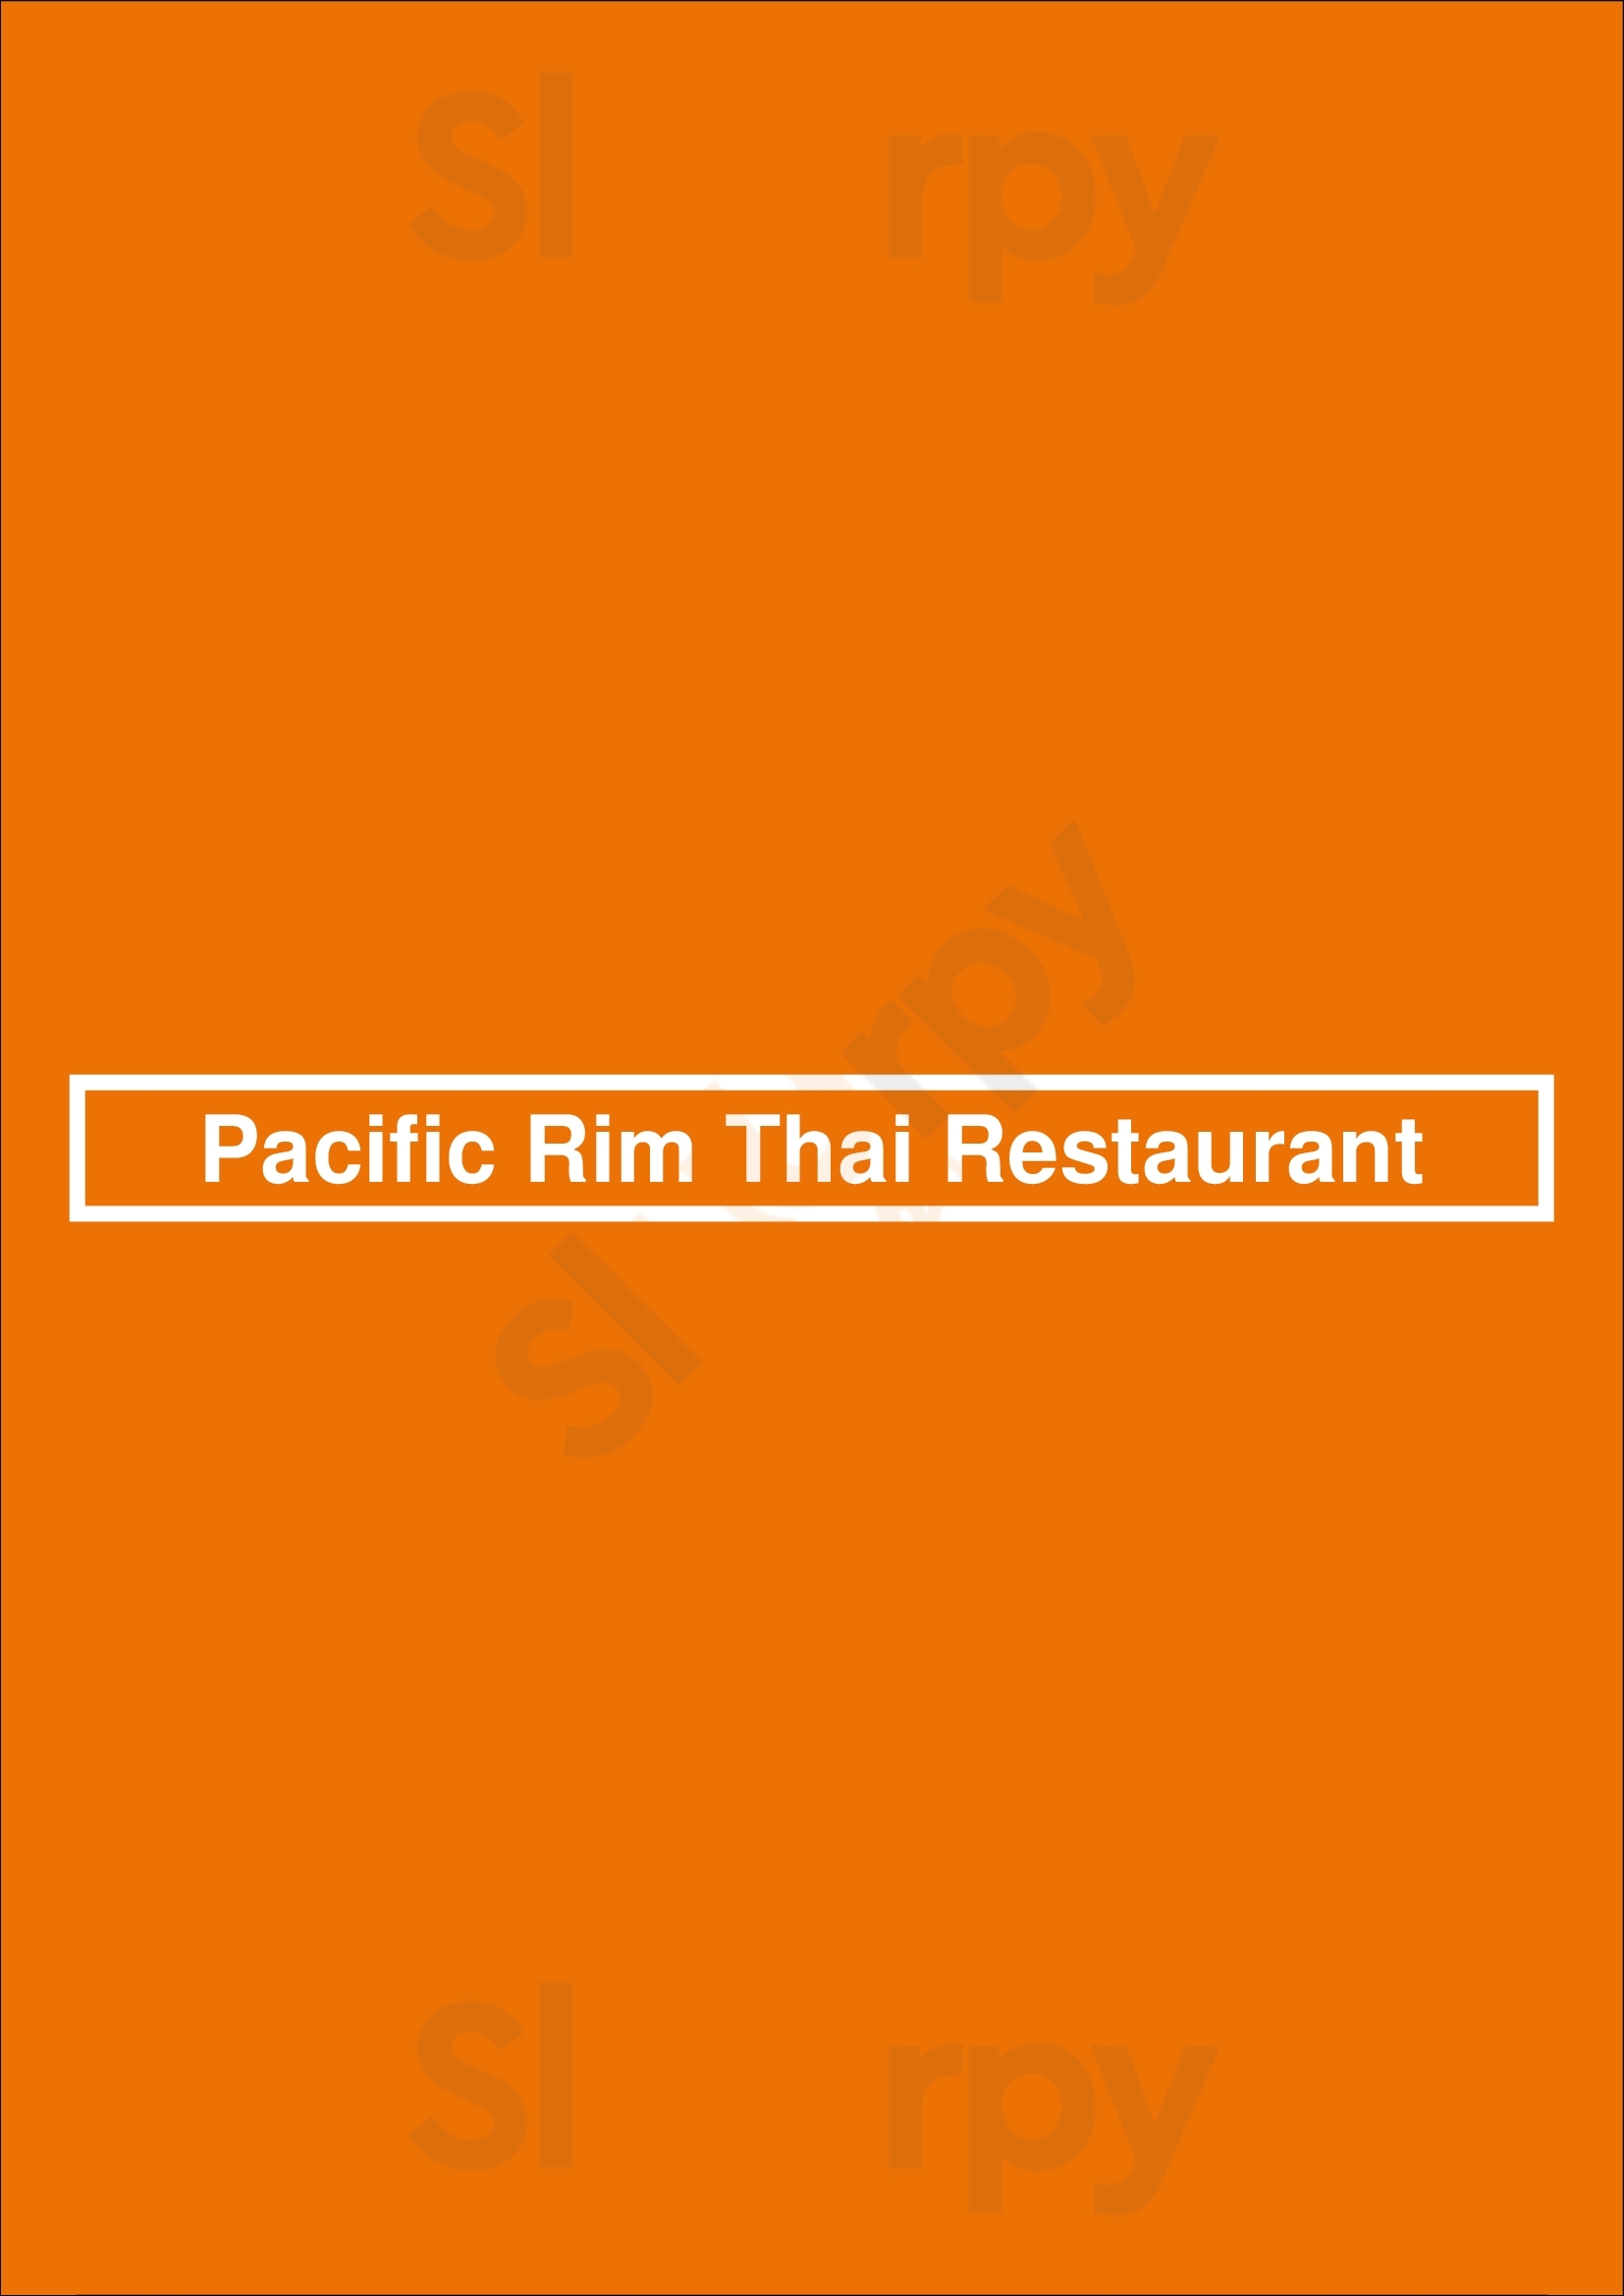 Pacific Rim Thai Restaurant Melbourne Menu - 1